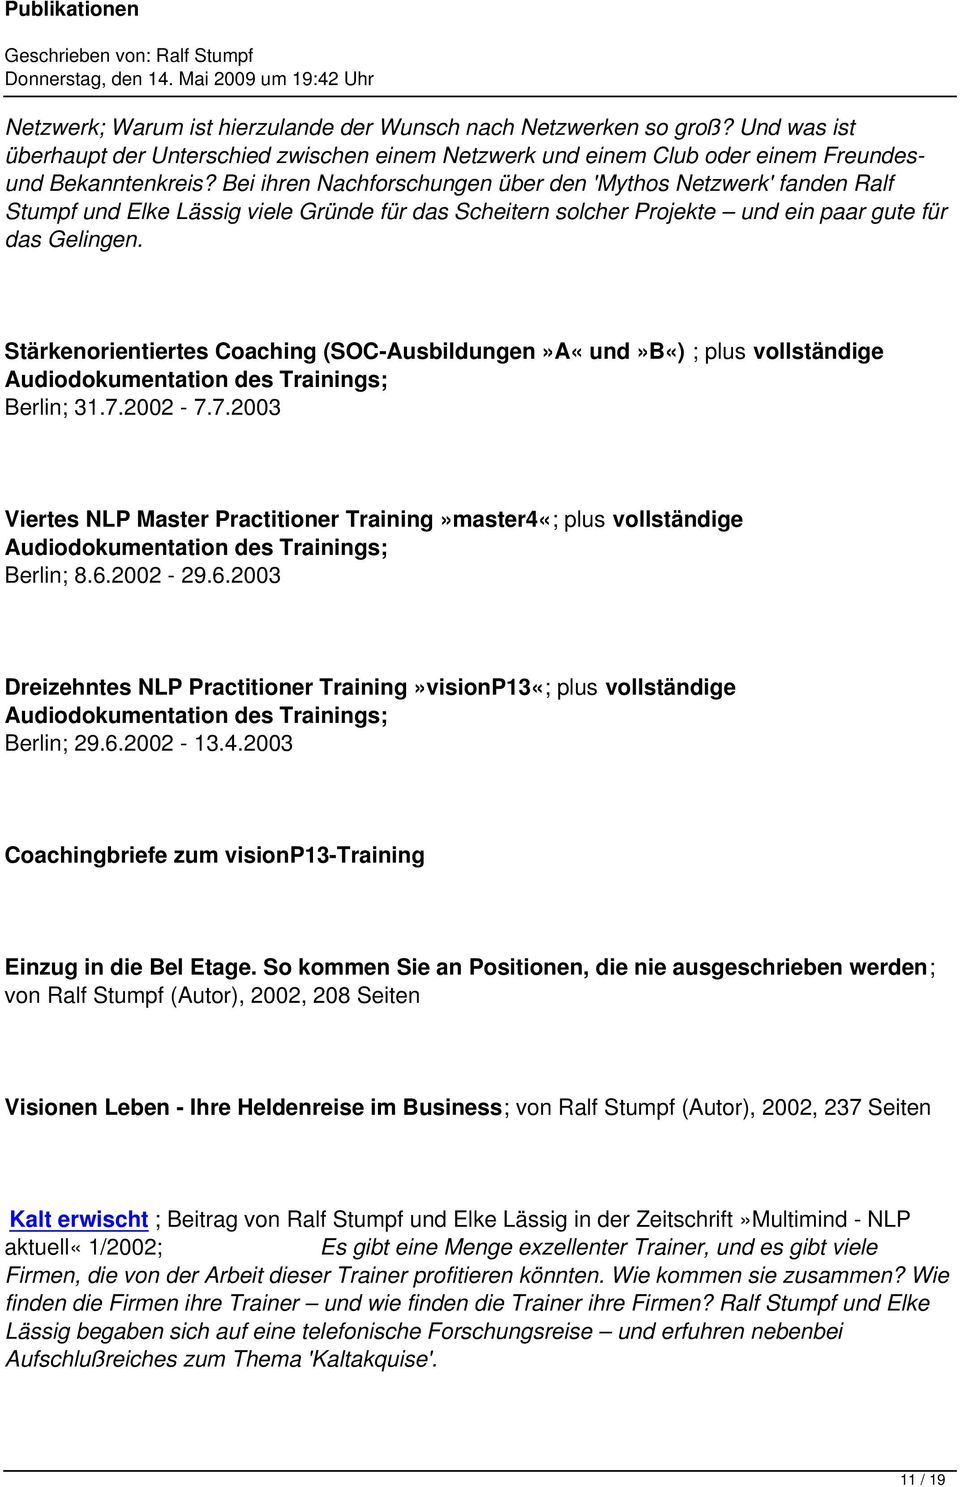 Stärkenorientiertes Coaching (SOC-Ausbildungen»A«und»B«) ; plus vollständige Berlin; 31.7.2002-7.7.2003 Viertes NLP Master Practitioner Training»master4«; plus vollständige Berlin; 8.6.